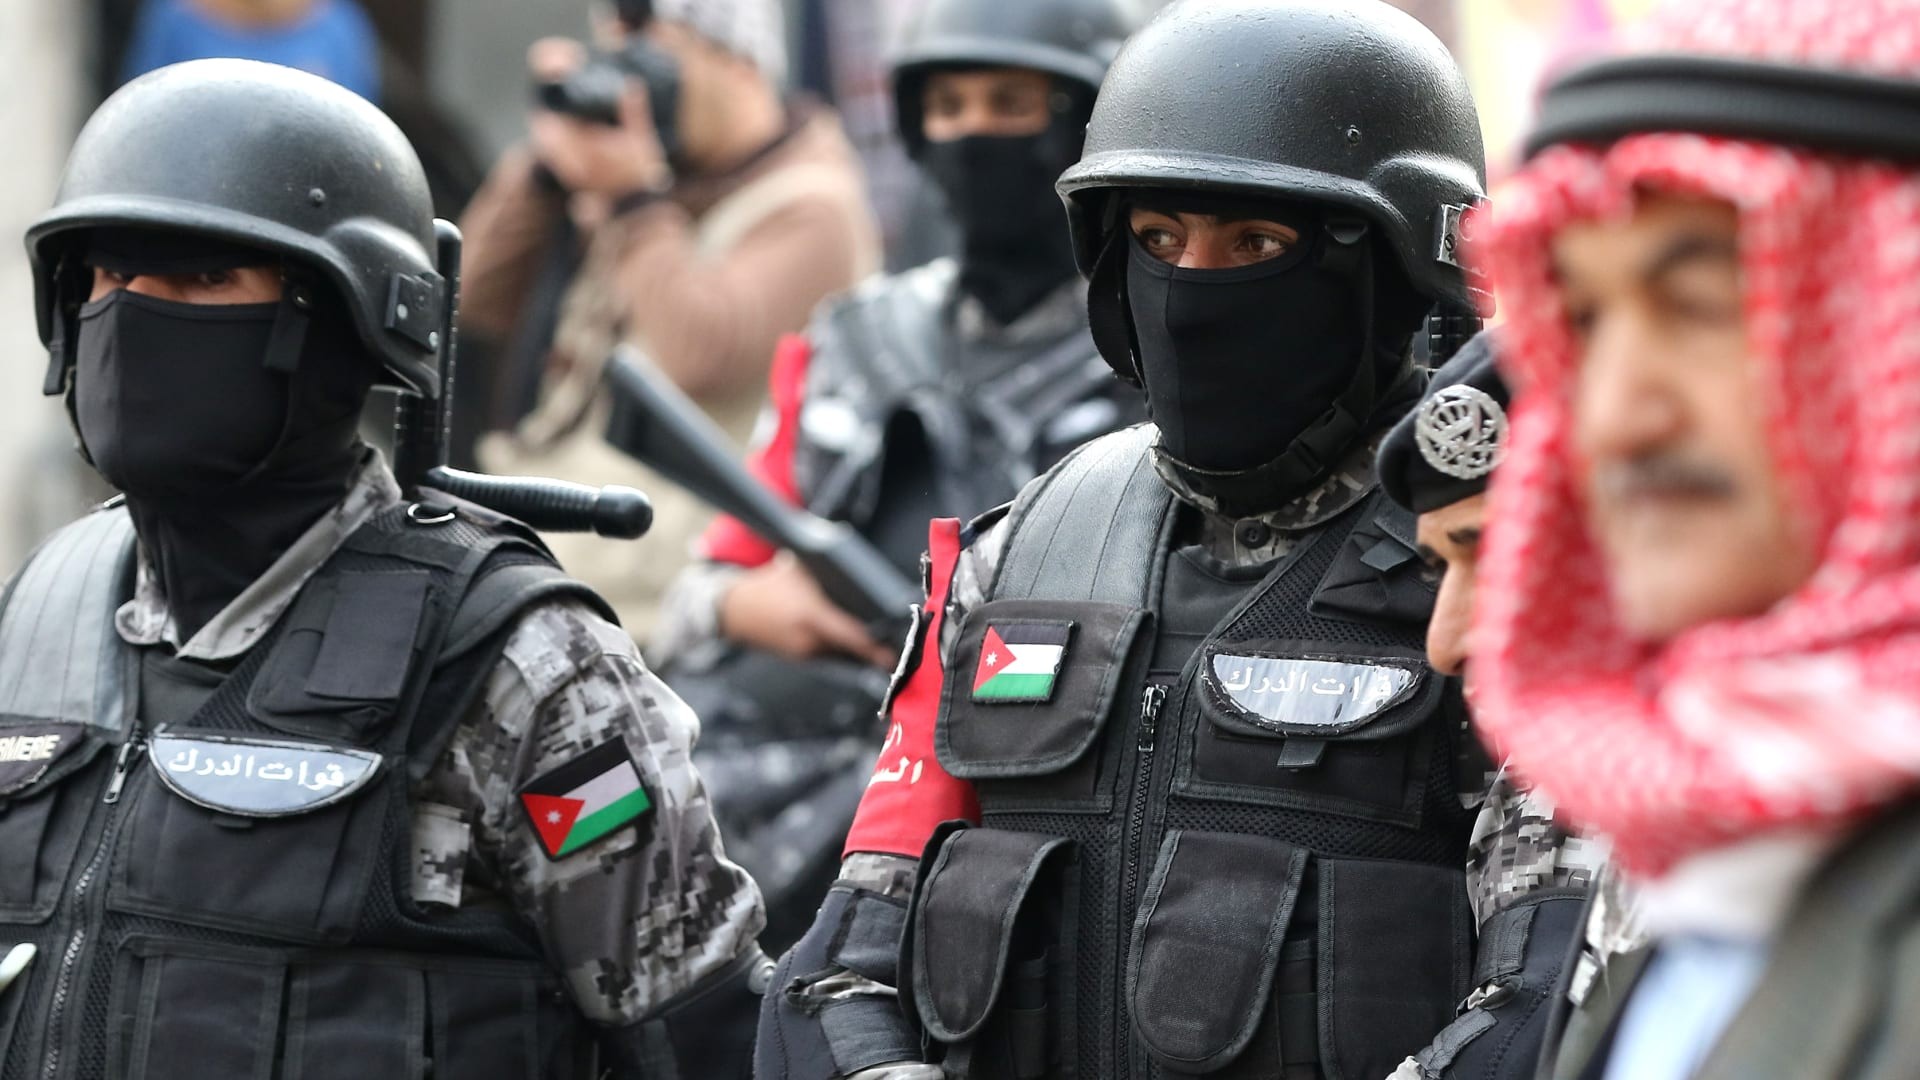 الأمن الأردني يكشف ملابسات جريمة قتل ظلت مجهولة 35 عاماً